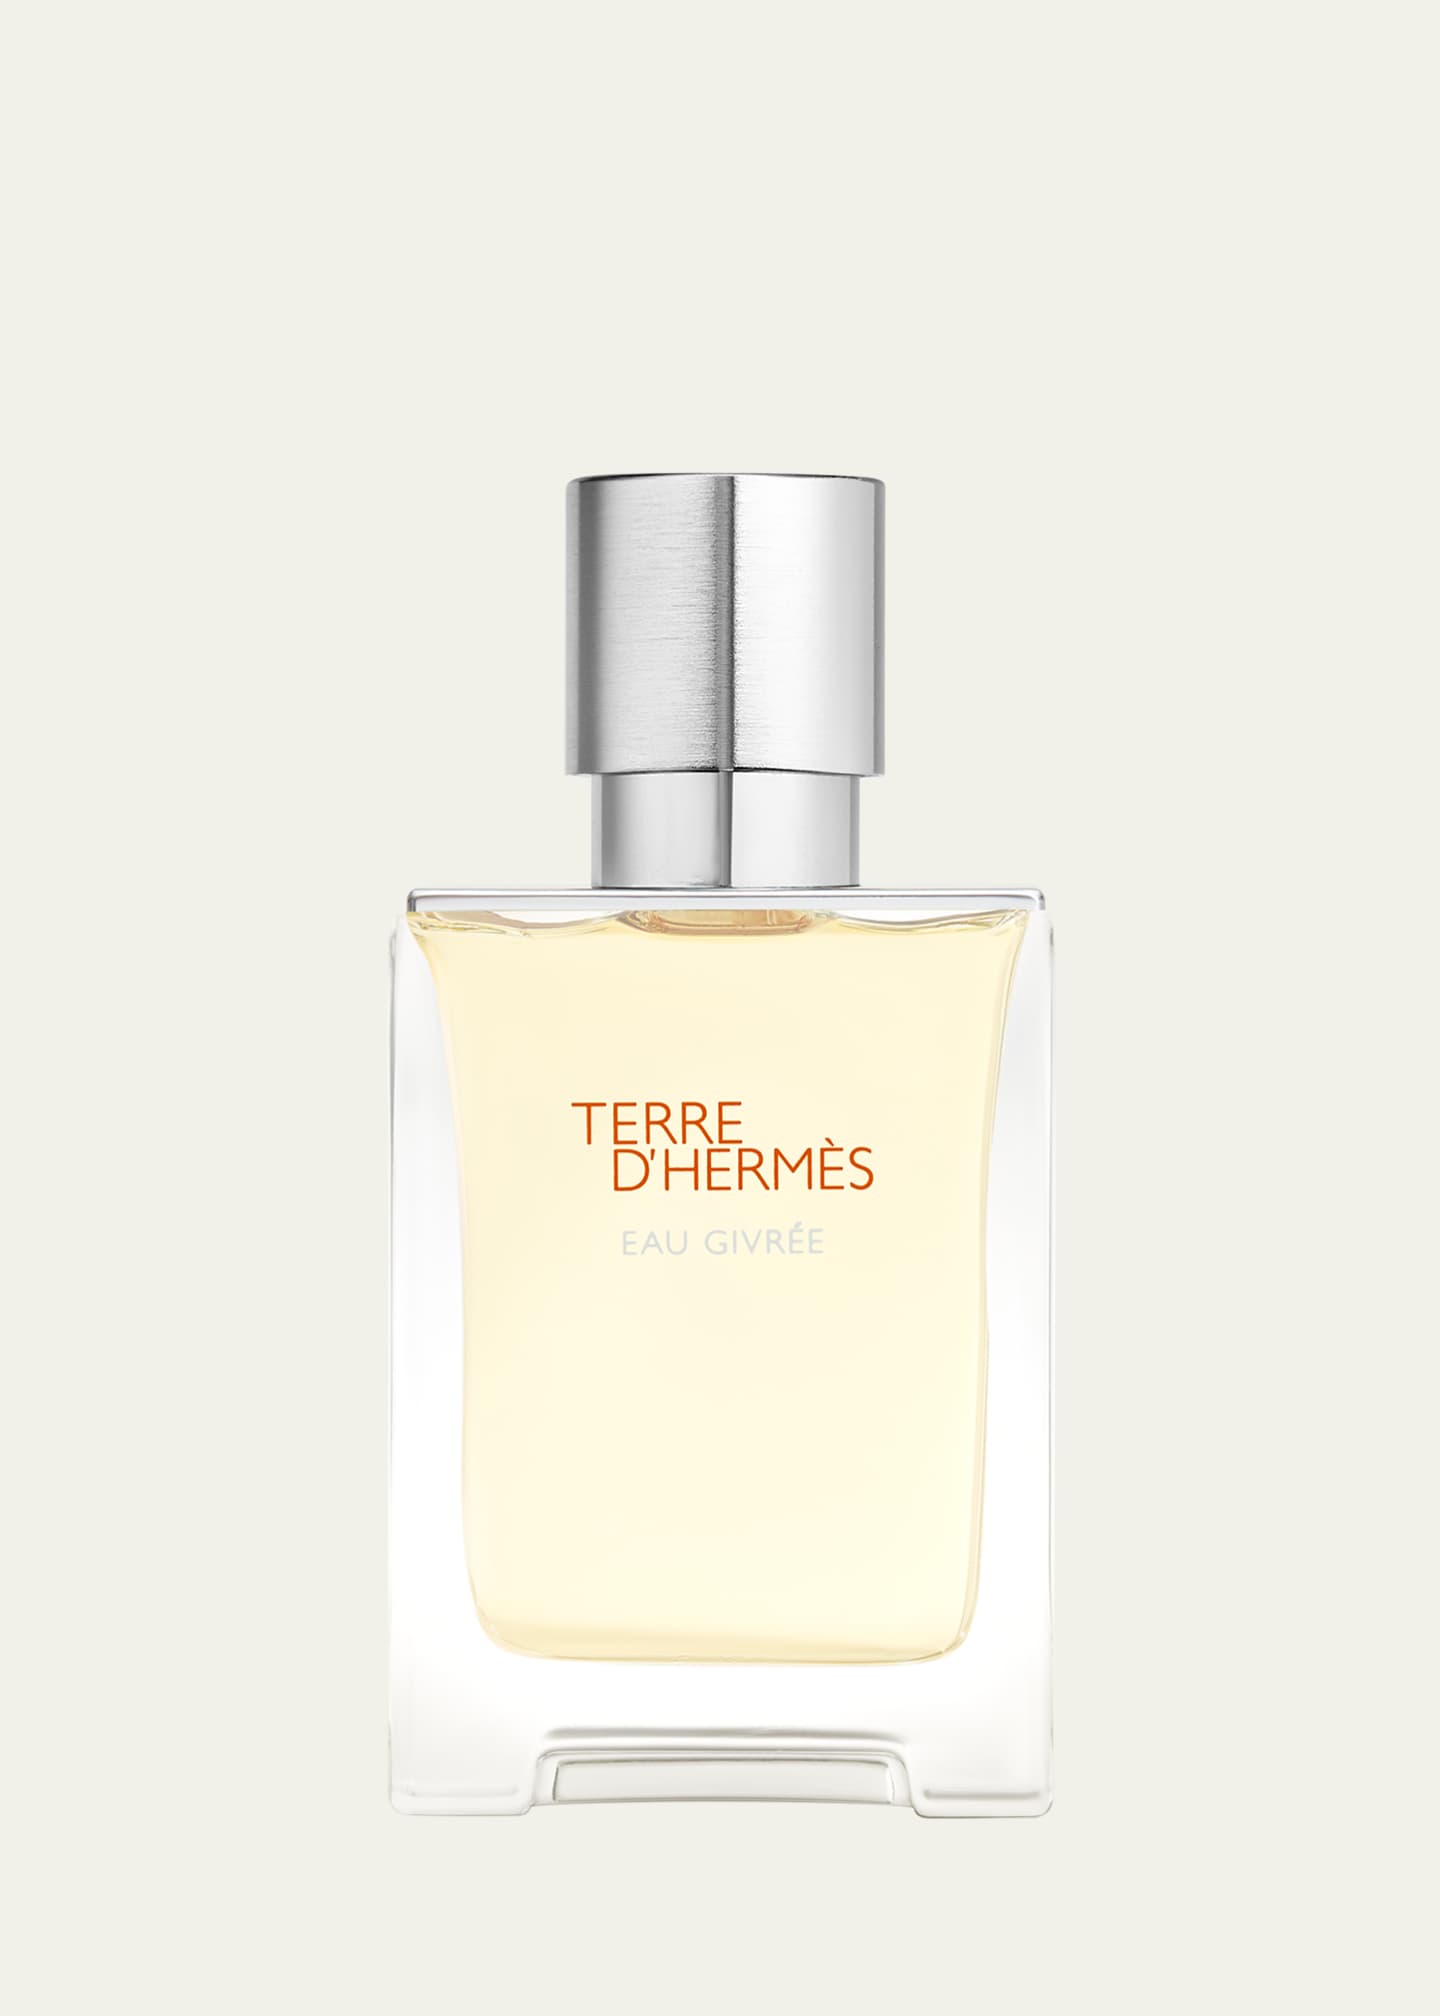 Hermès Terre d’Hermes Eau Givree Eau de Parfum, 1.7 oz. - Bergdorf Goodman